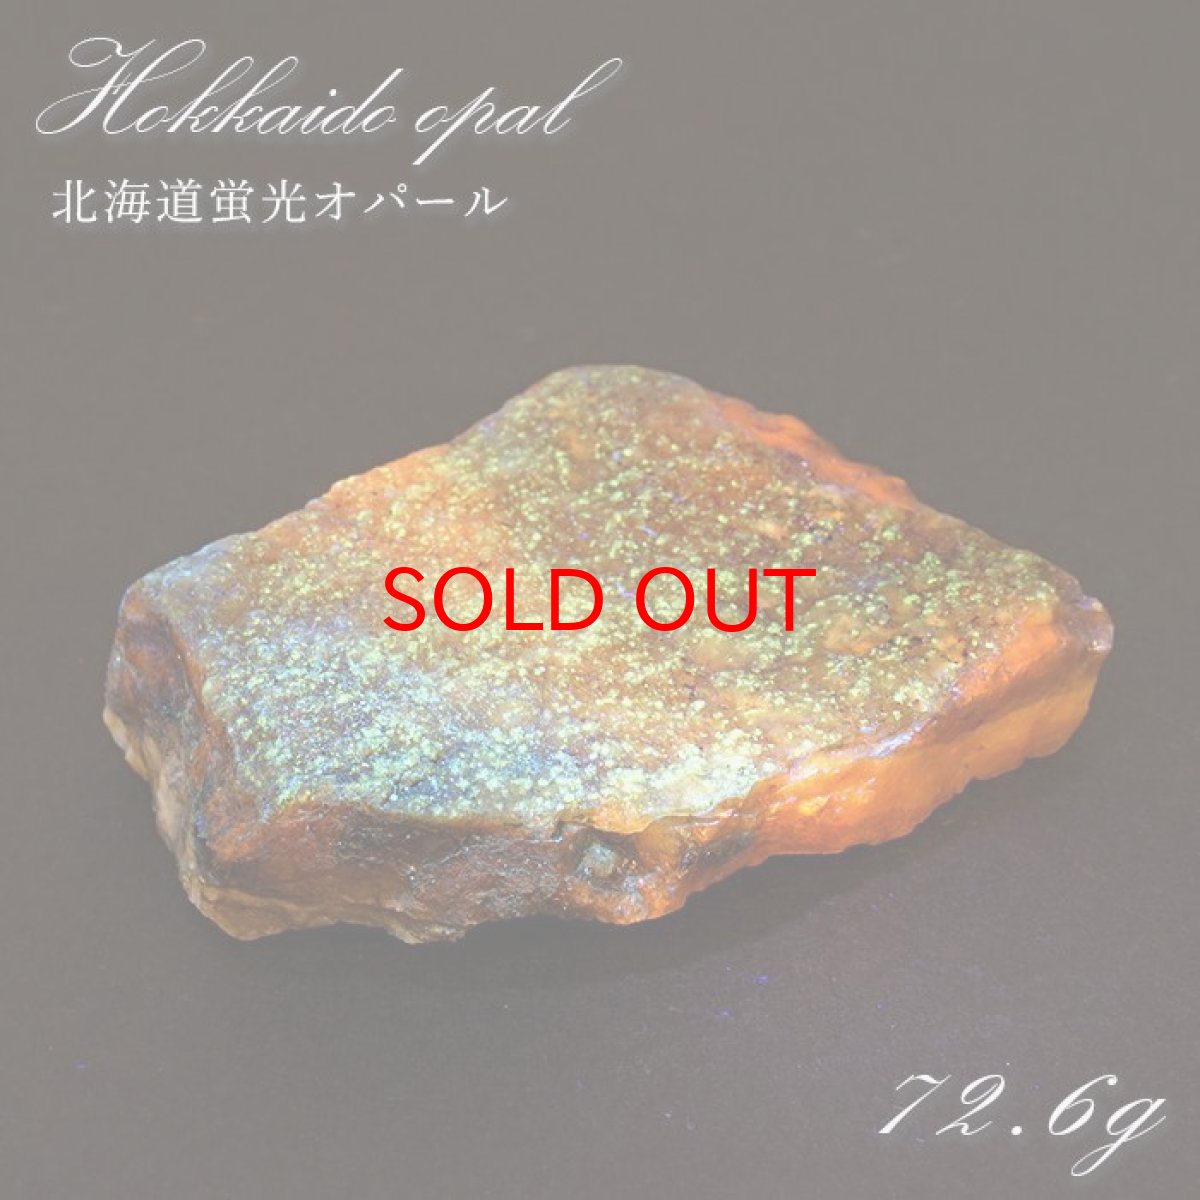 画像1: 北海道蛍光オパール 原石 約72.6g 北海道産 一点もの 天然石 パワーストーン カラーストーン (1)